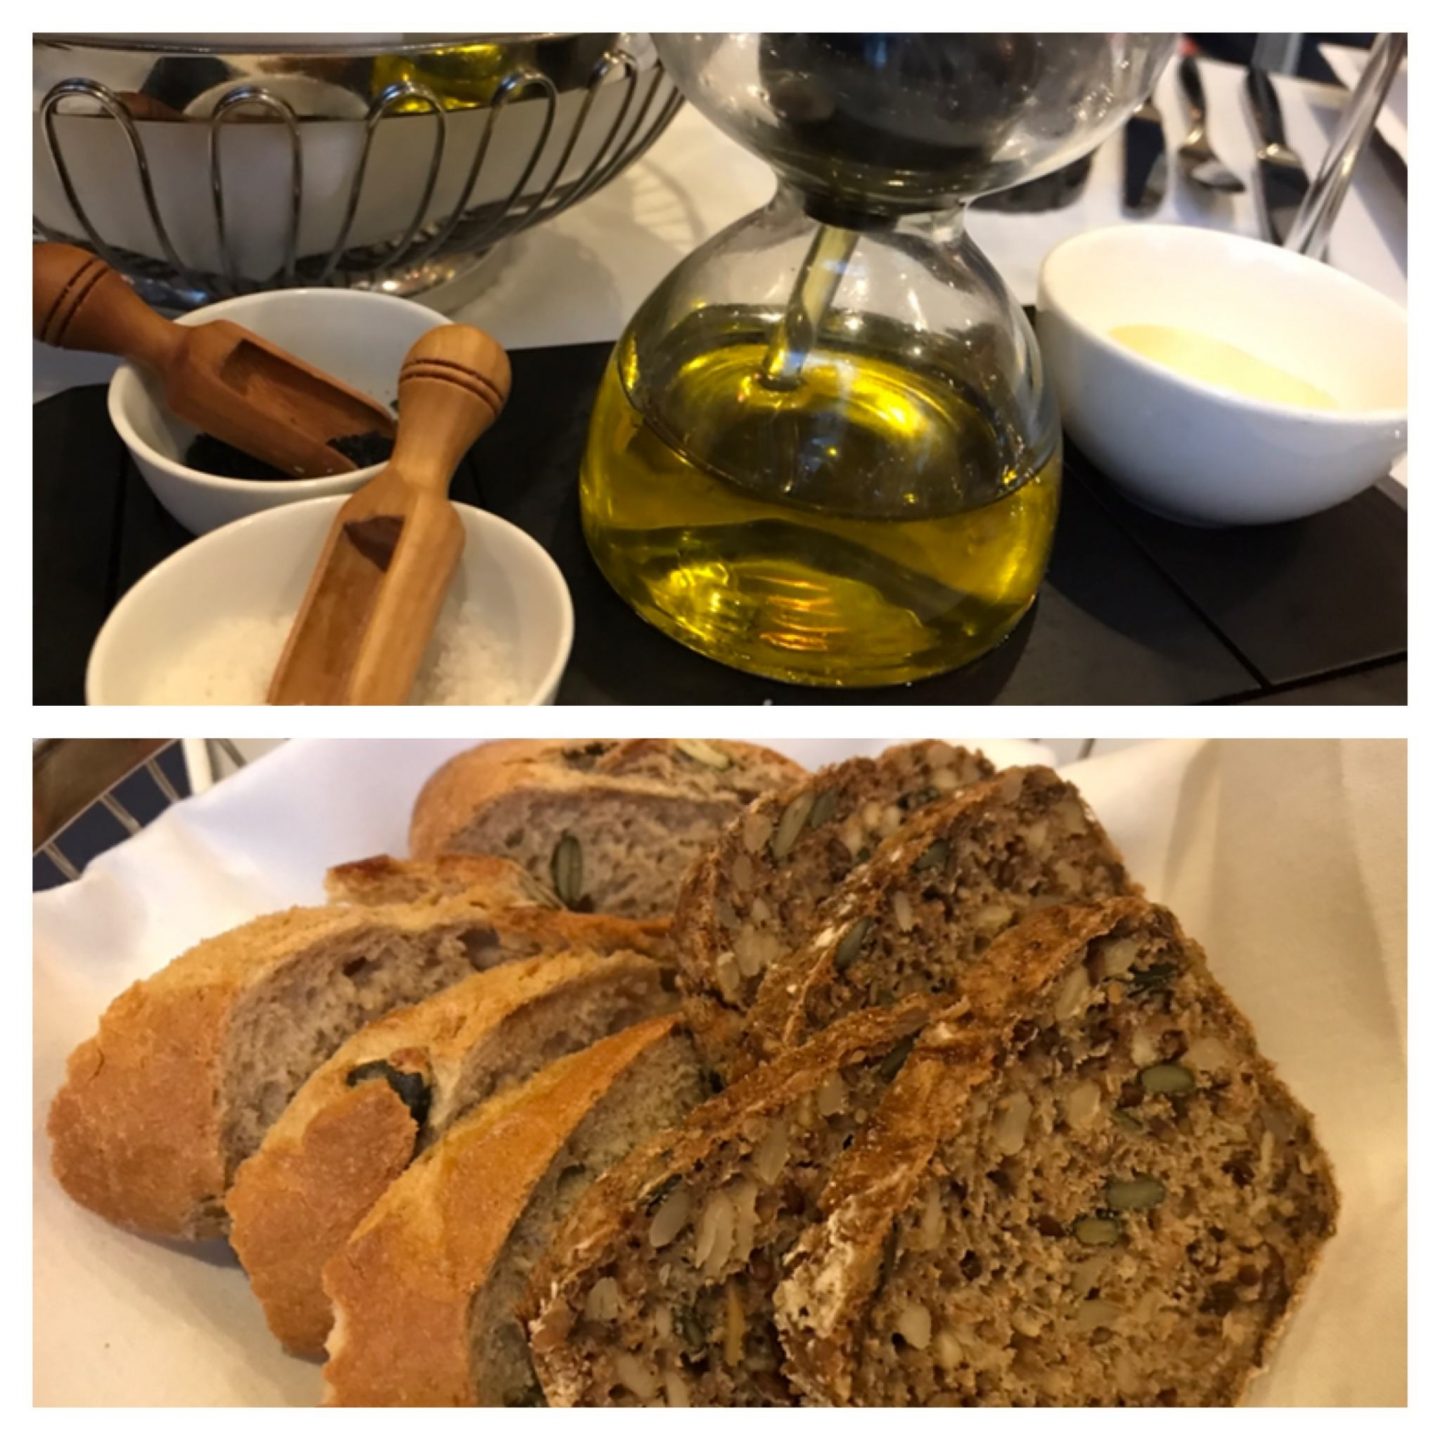 Brot Butter Salz Erfahrung Menükarussell Gute Stube Parkhotel Herne Foodblog Sternestulle